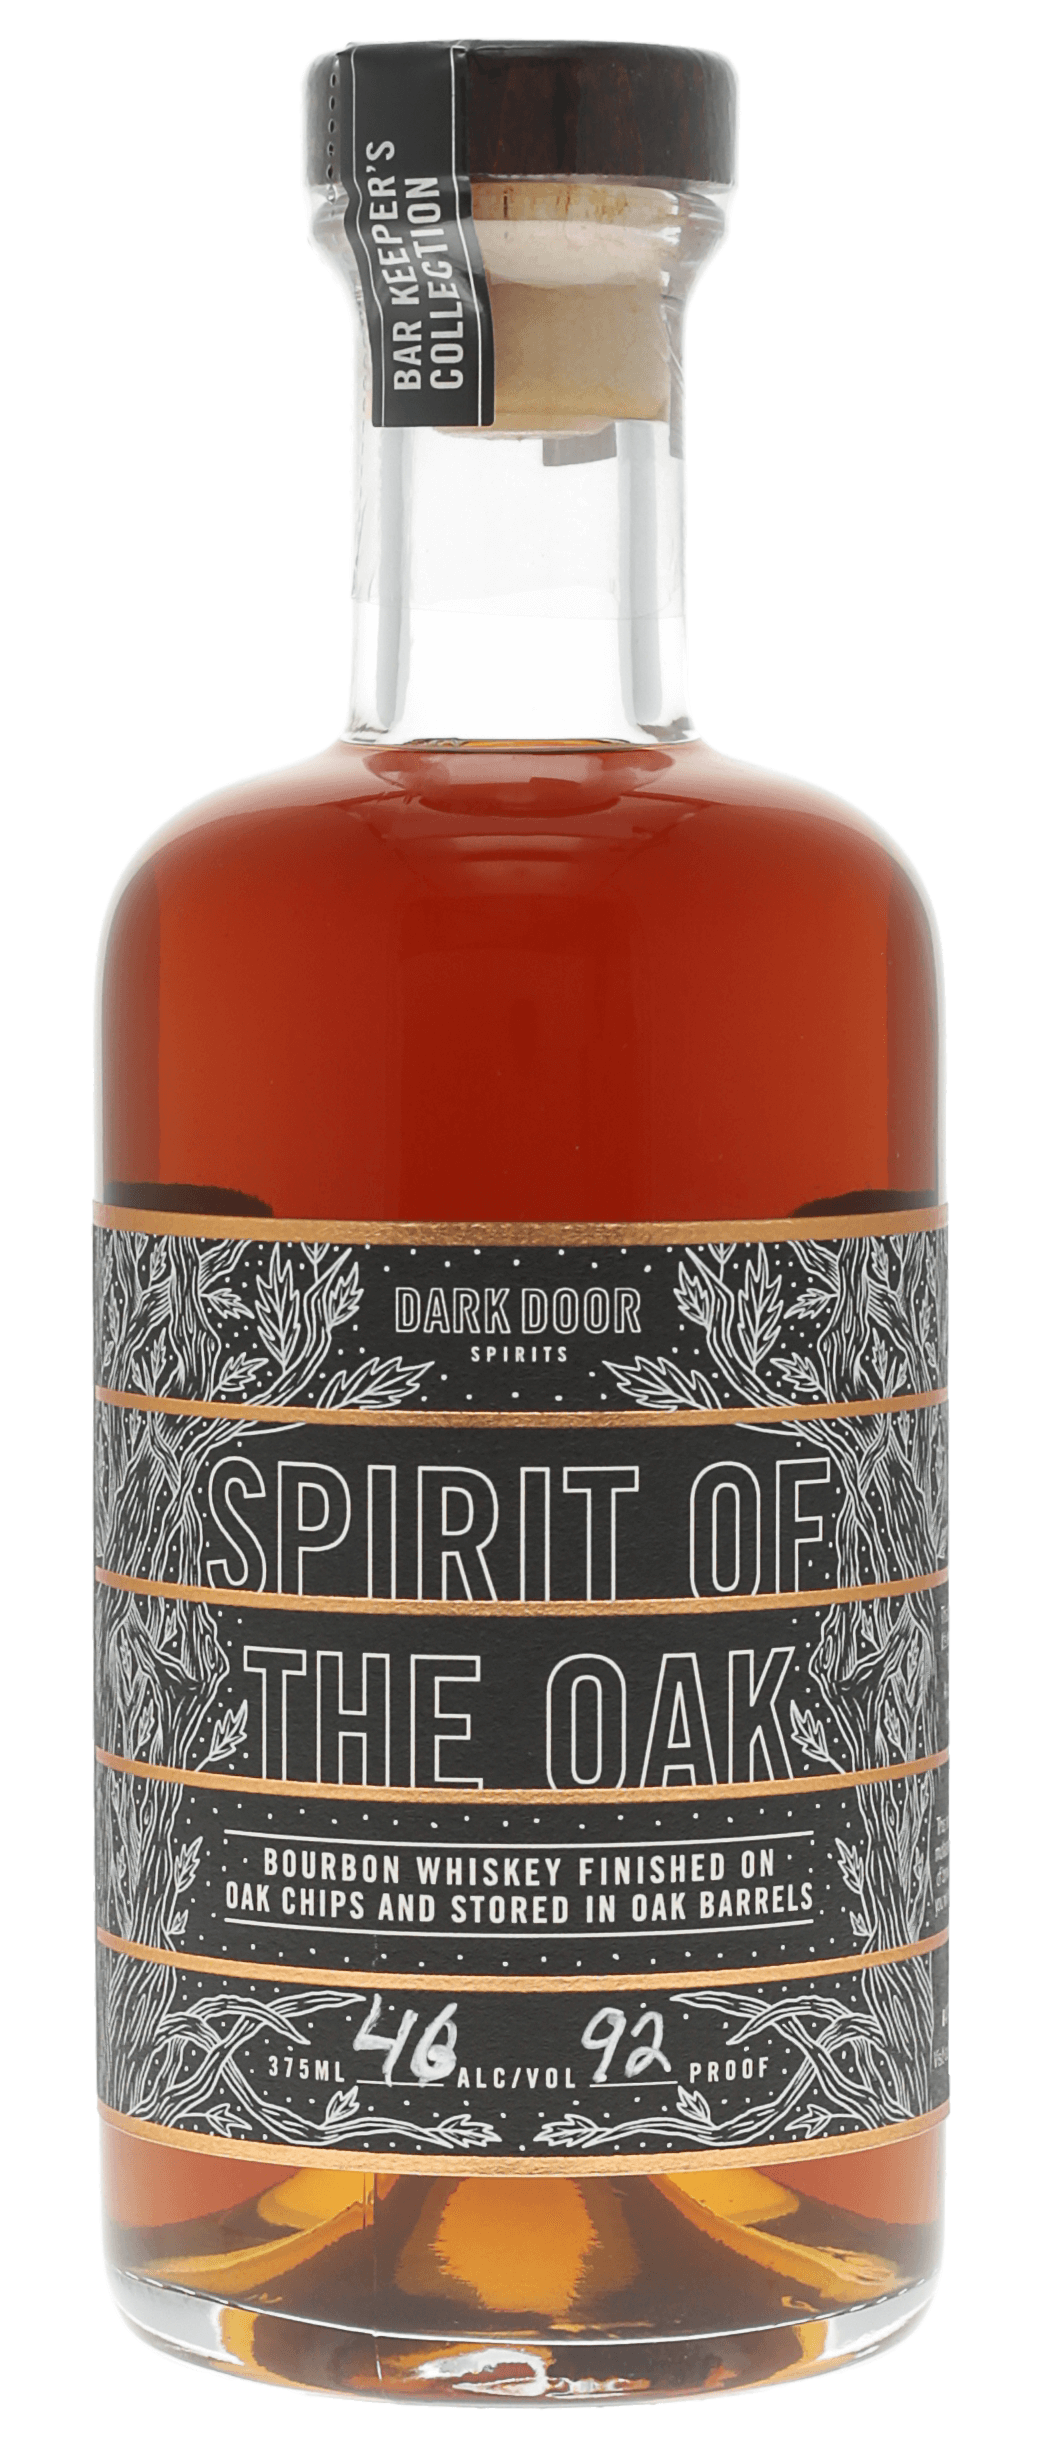 Spirit of Oak Bourbon Whiskey